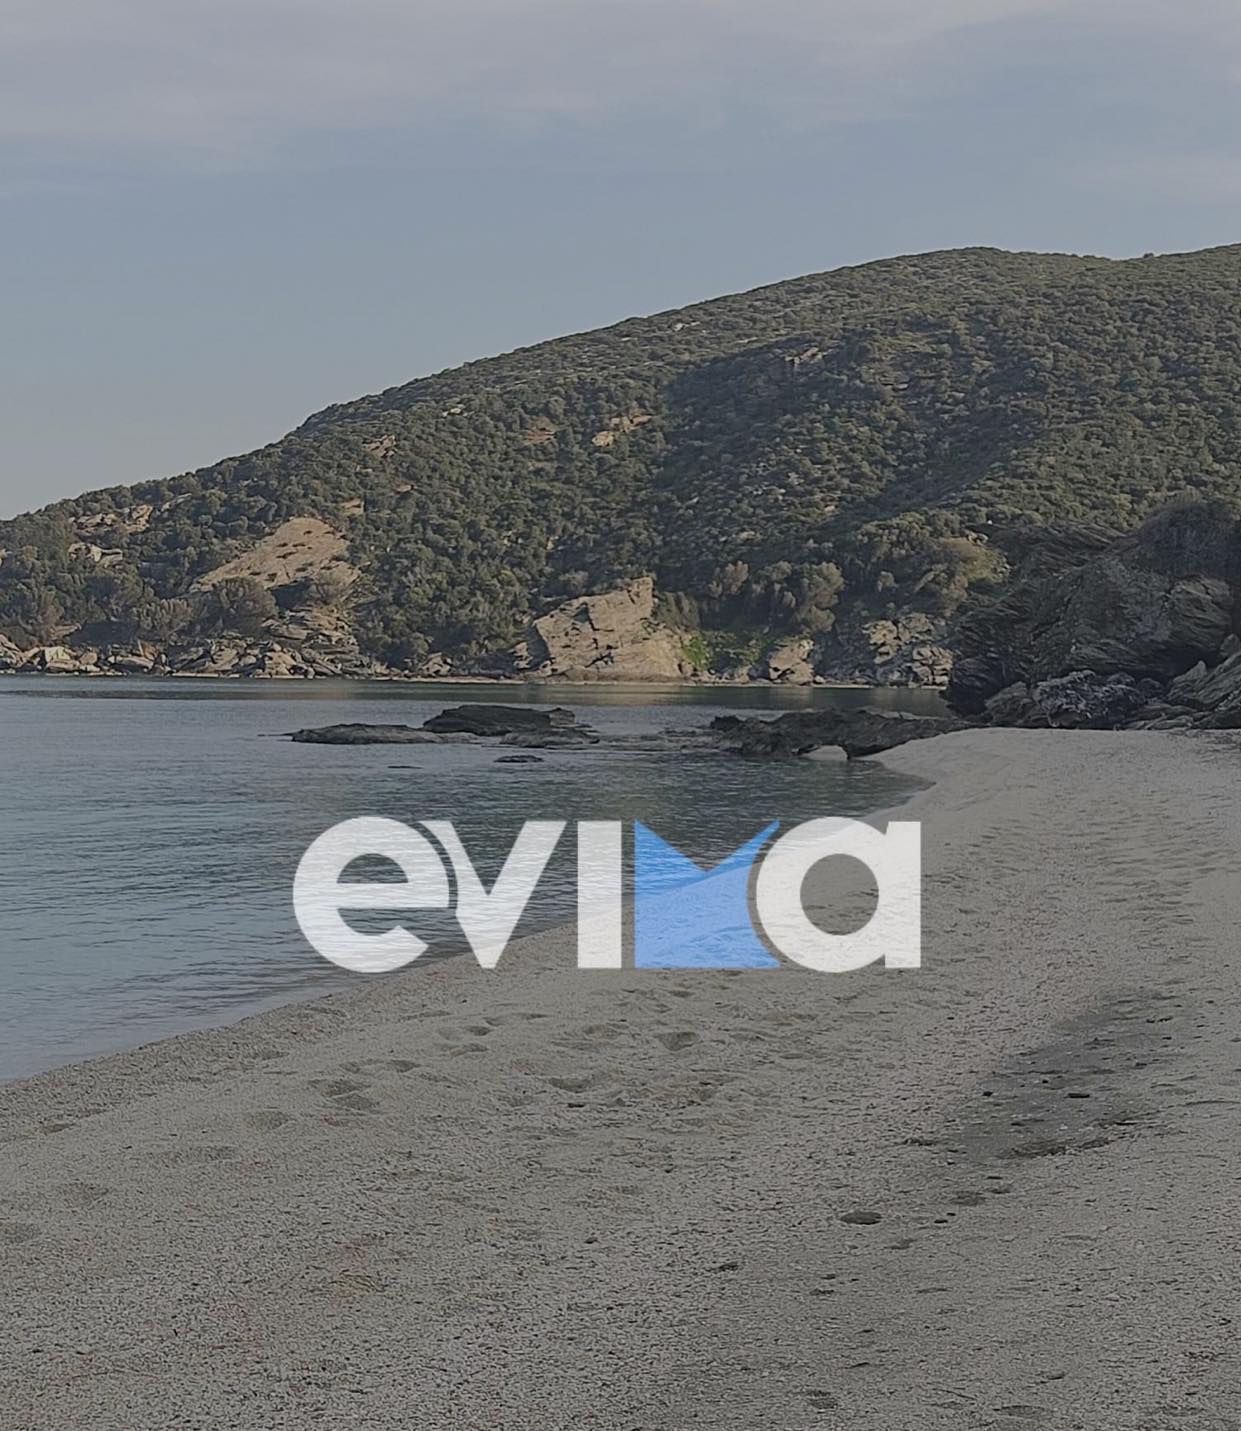 Εύβοια: Ποια είναι η πανέμορφη παραλία που έσπευσαν σήμερα πολίτες να την επισκεφθούν; [εικόνες]